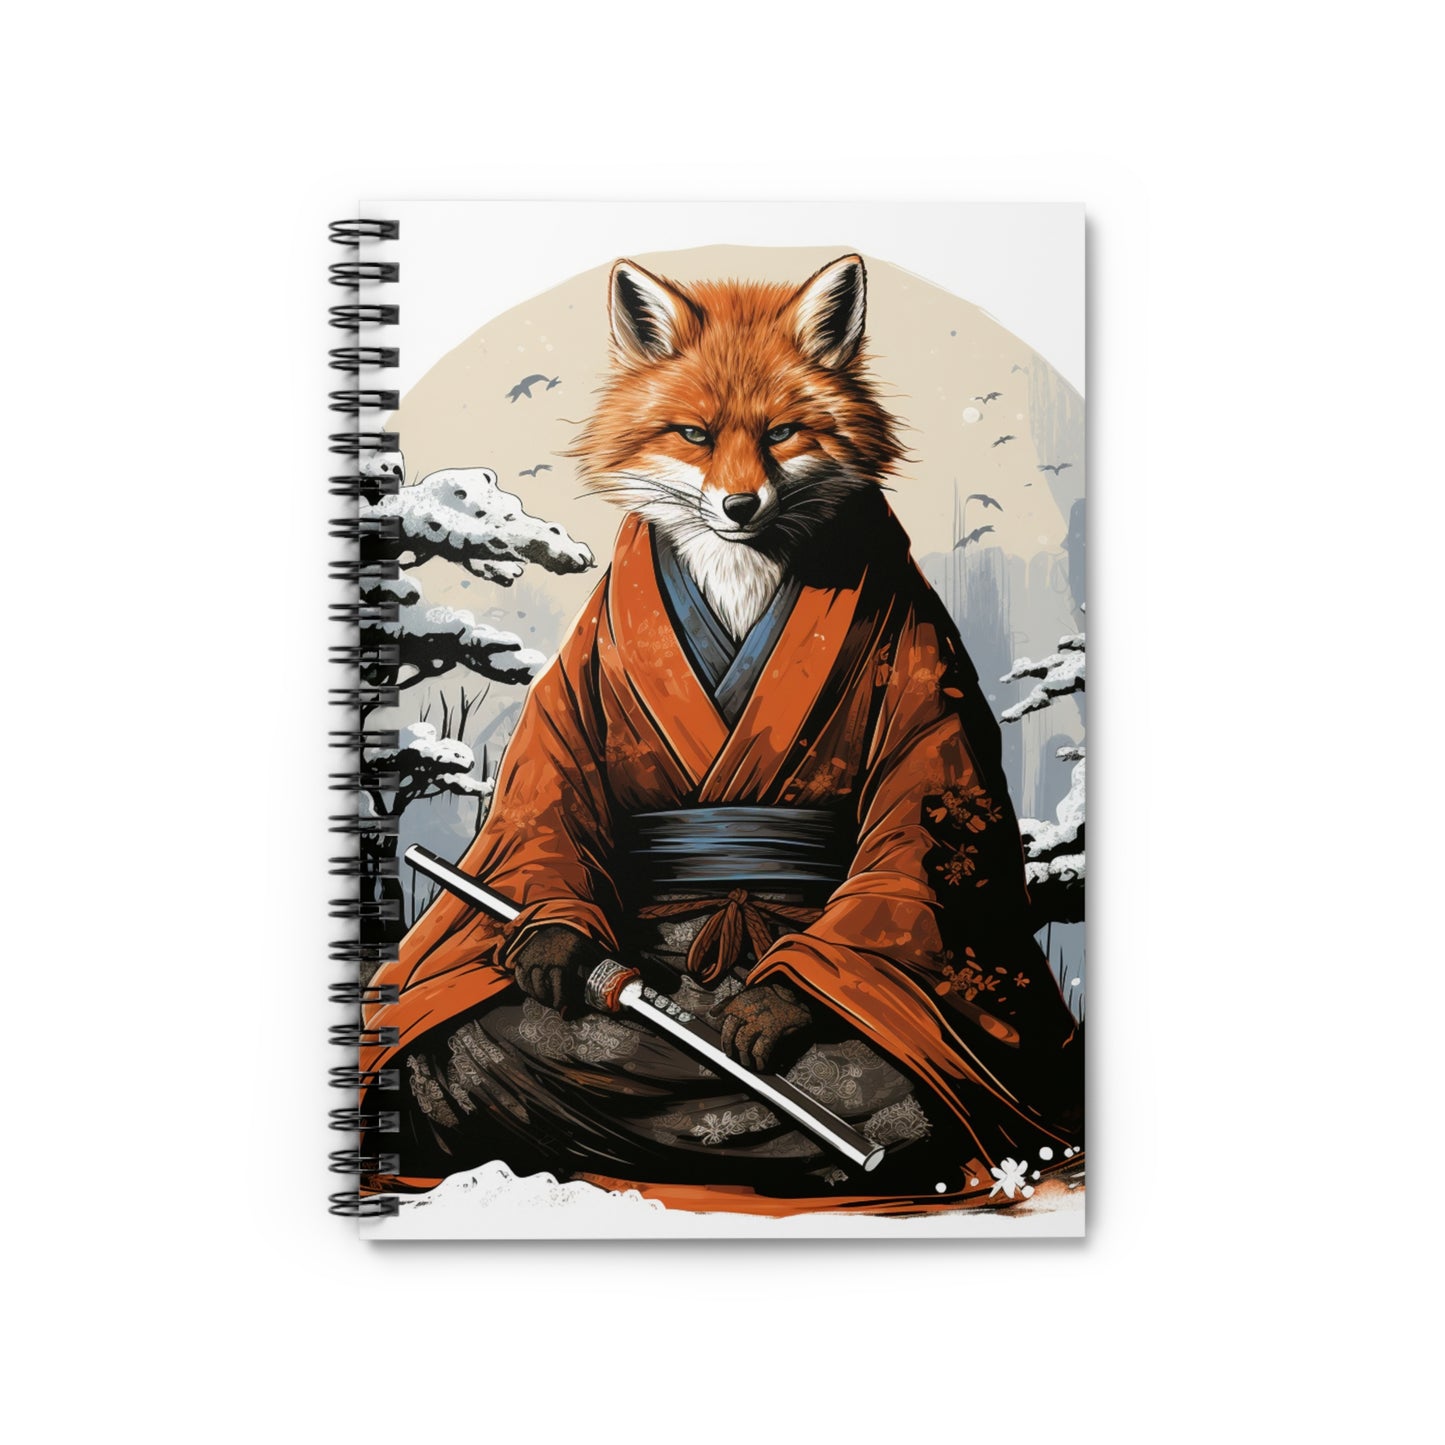 Samurai Fox Spiral Bound Notebook